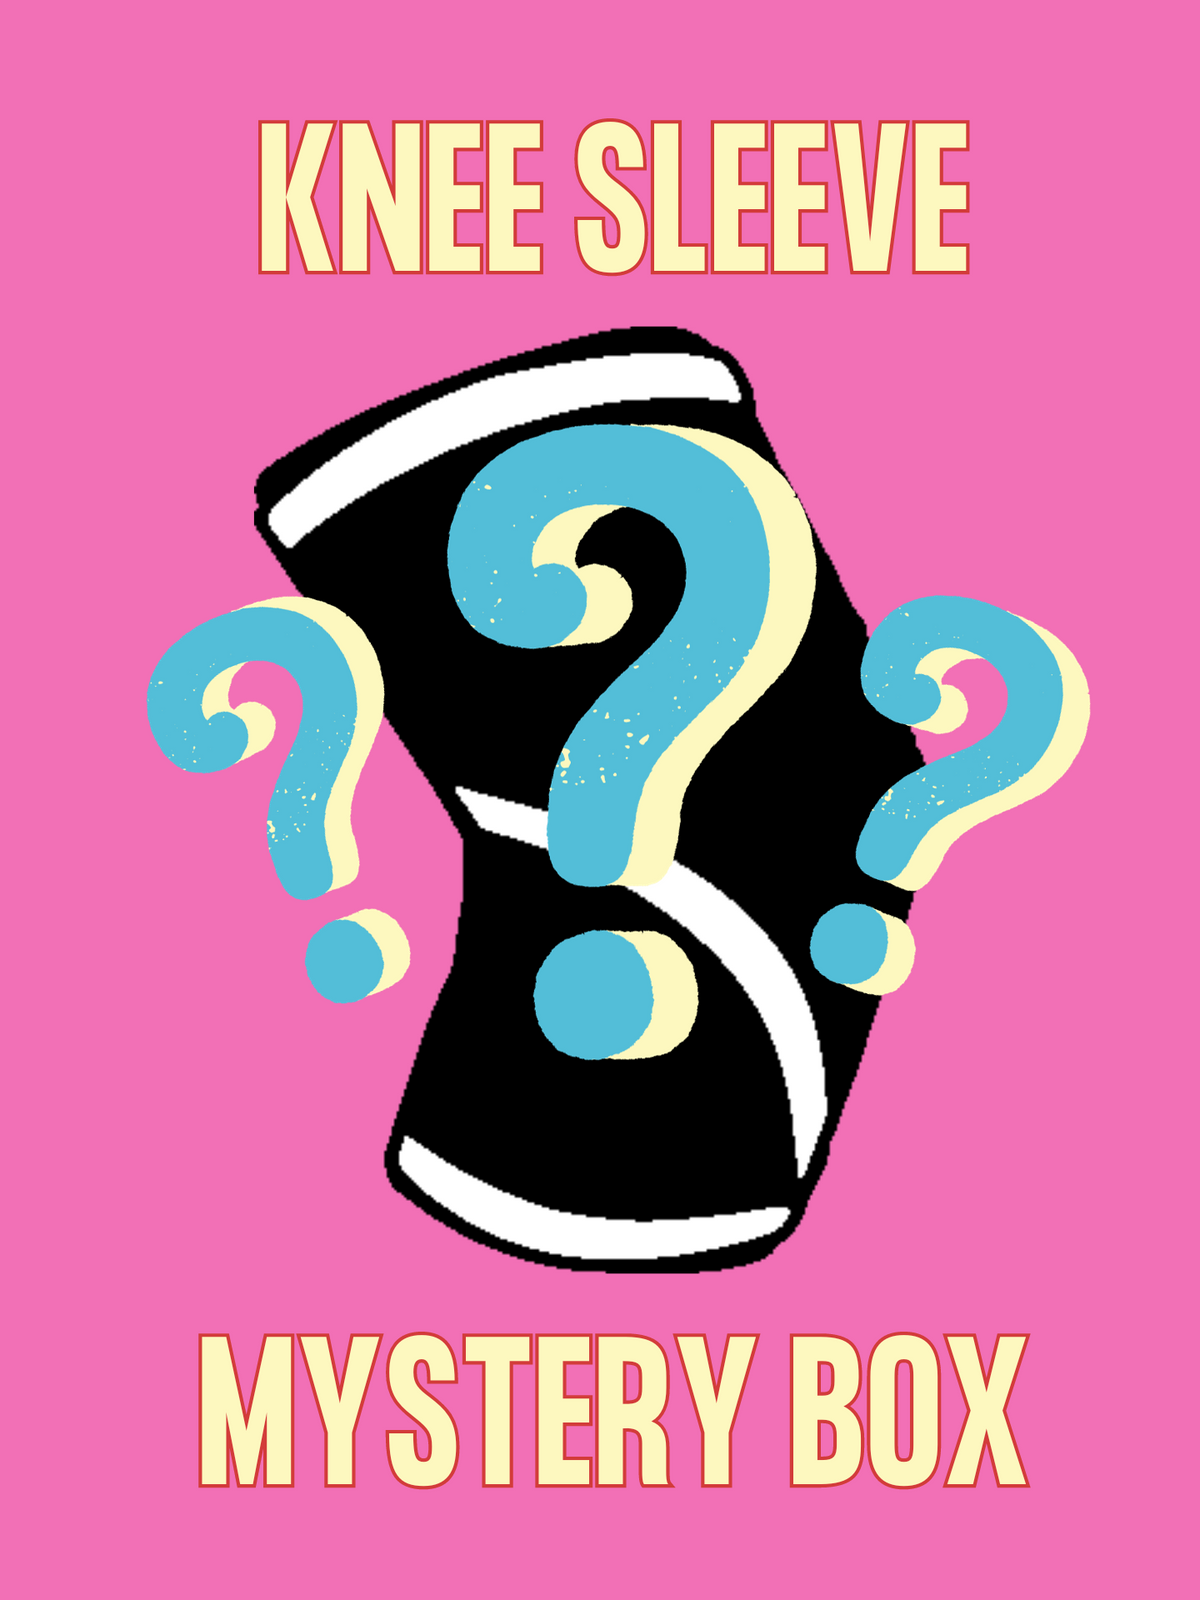 Mystery Neoprene Knee Sleeves